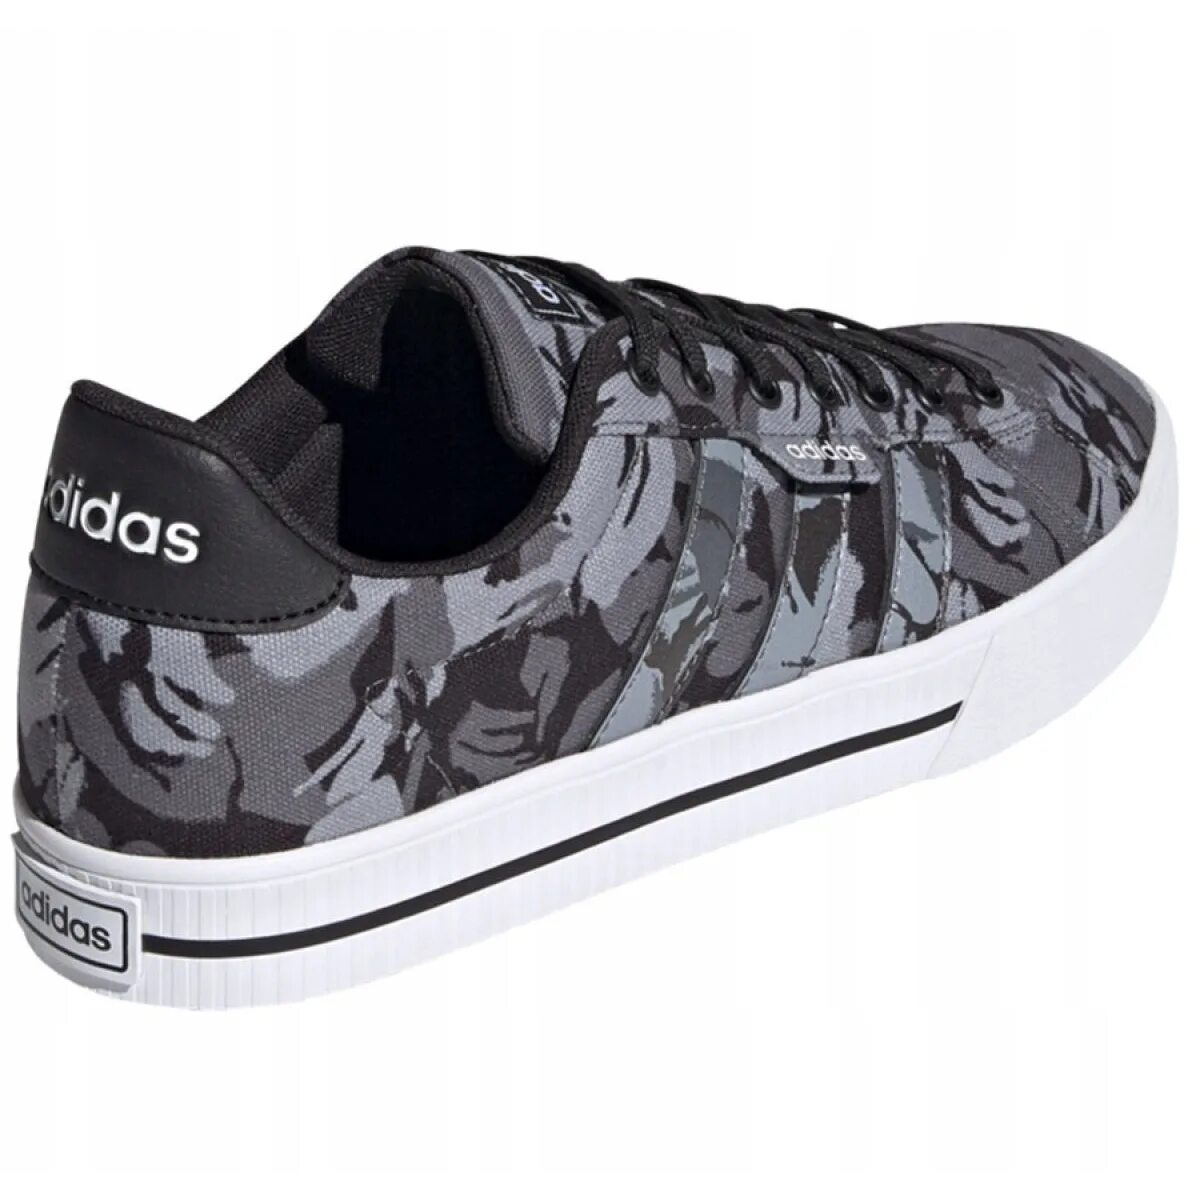 Adidas daily 3.0. Adidas Daily 3.0 Shoes. Adidas Daily 3.0 камуфляж. Adidas Daily Wear 2024. Кроссовки адидас камуфлированные мужские.